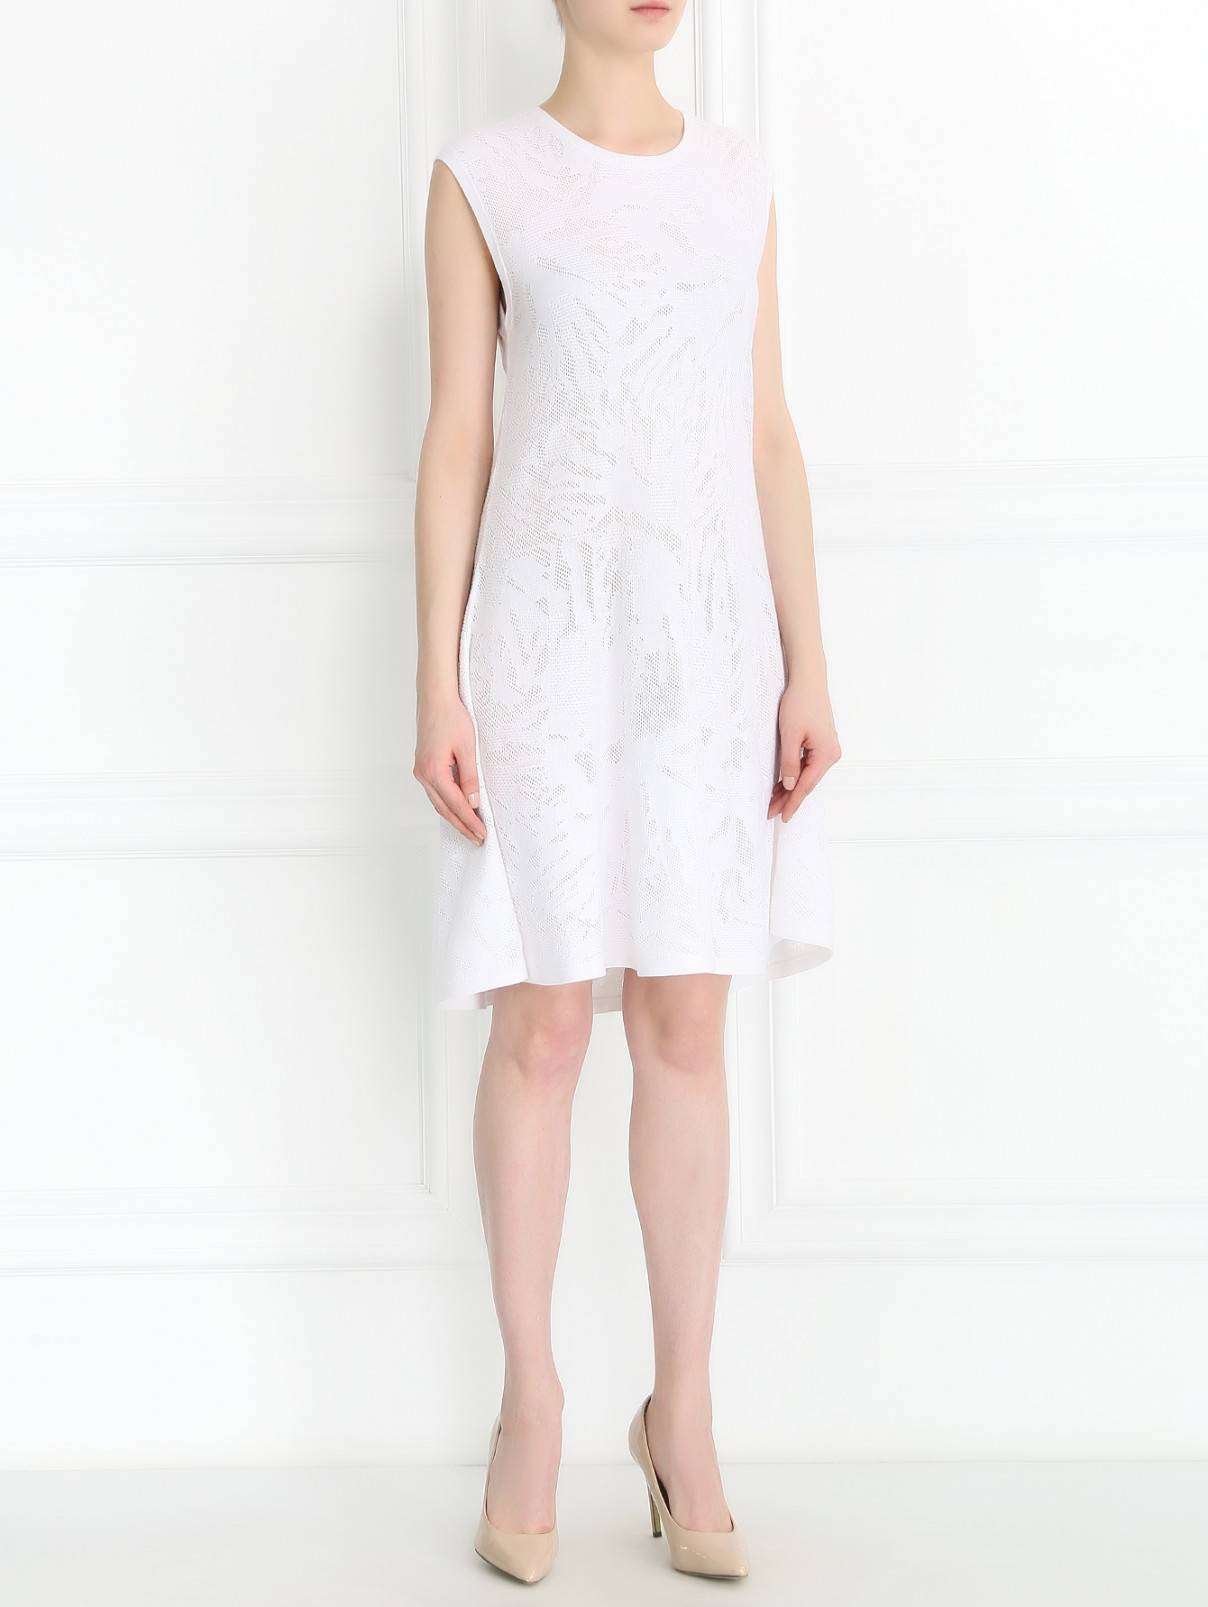 Платье из хлопка без рукавов Armani Jeans  –  Модель Общий вид  – Цвет:  Белый